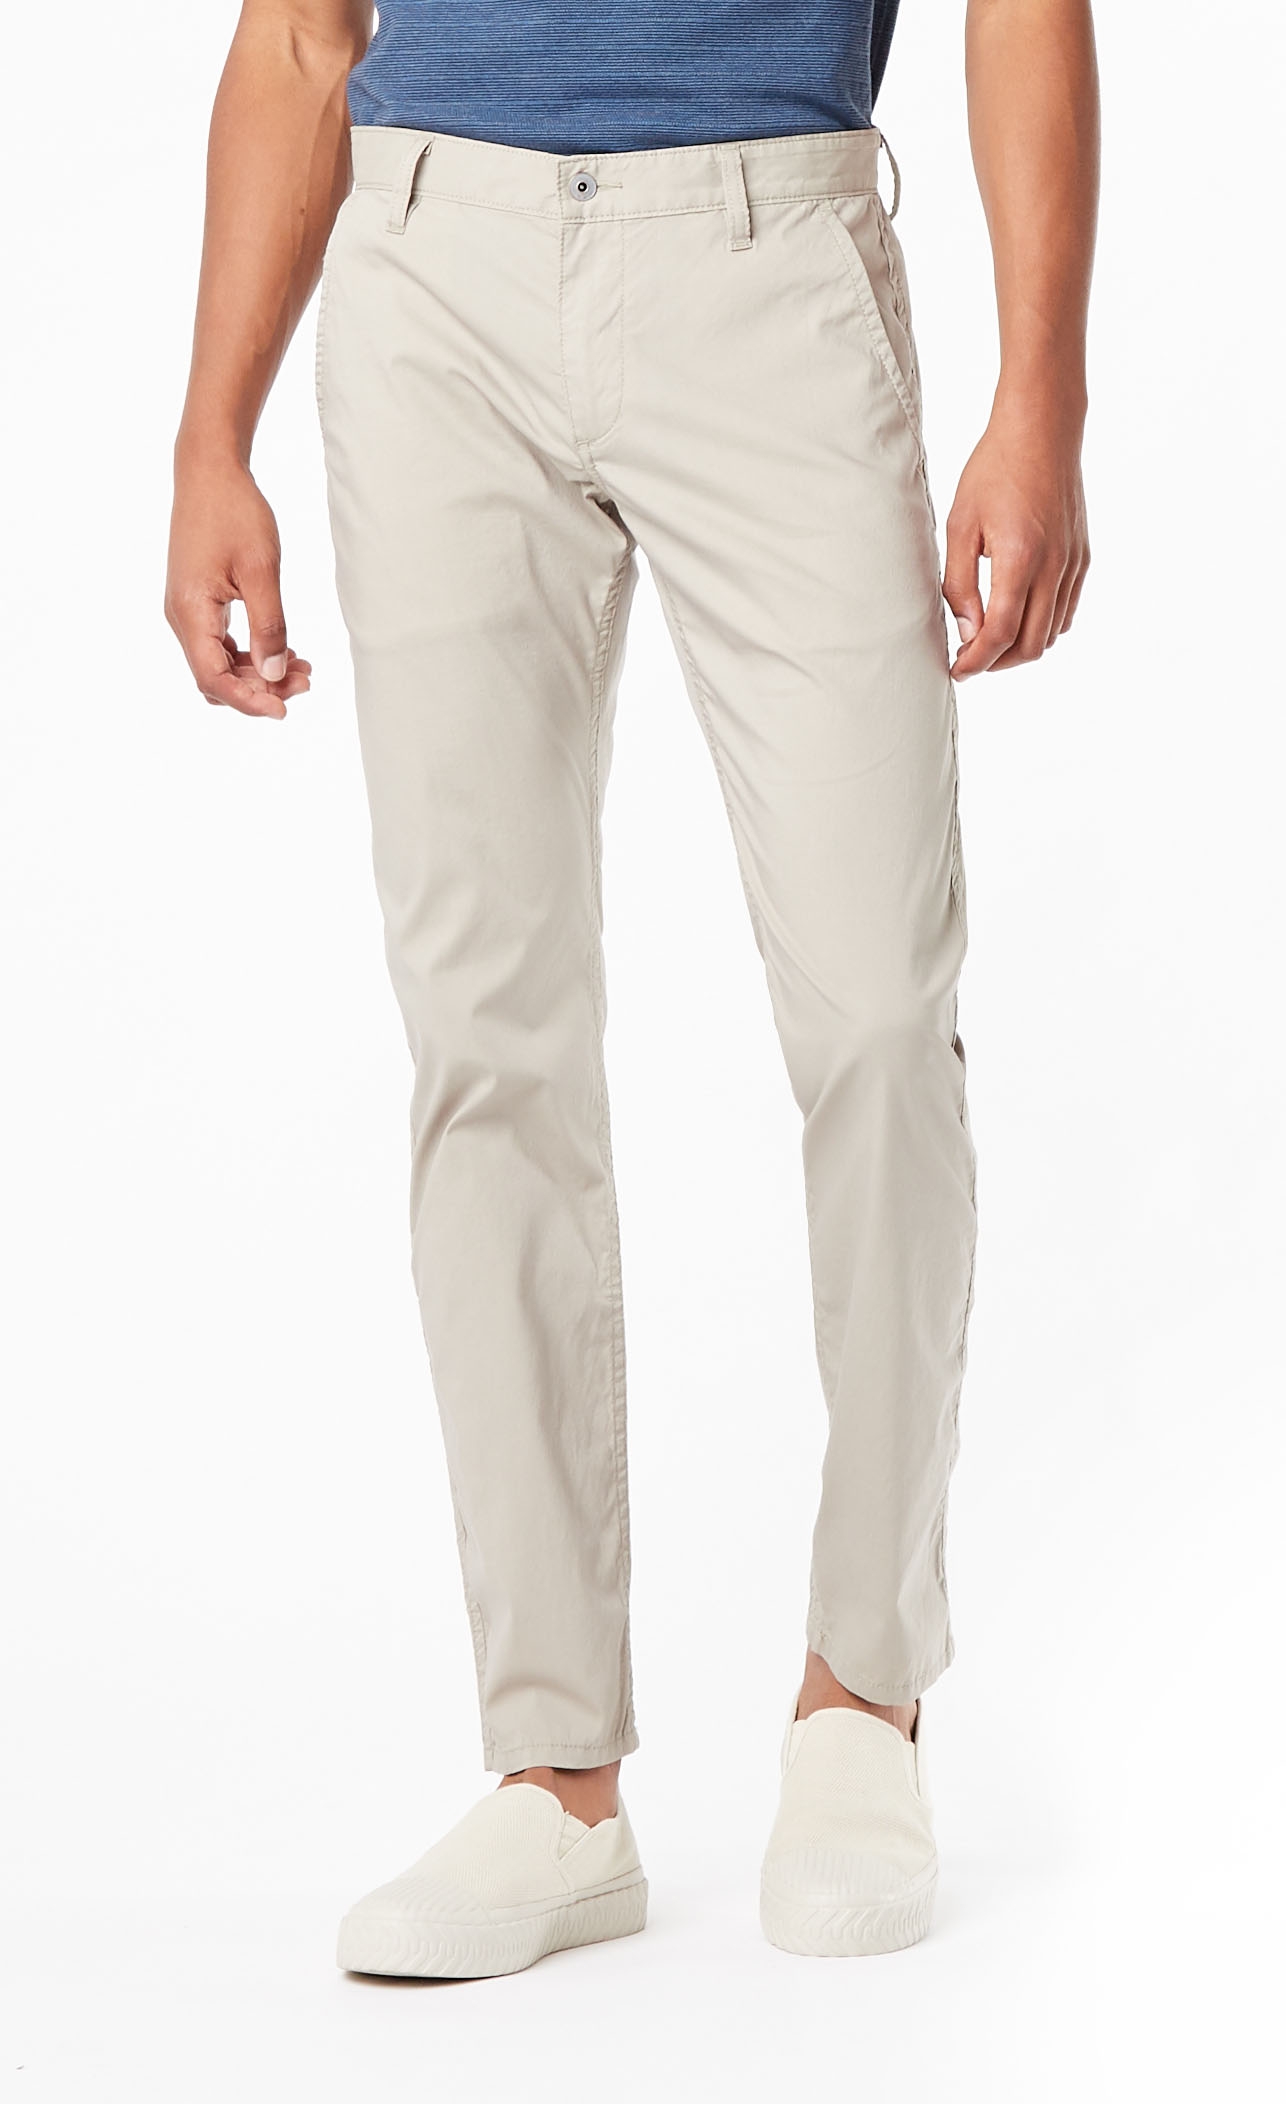 Pantalones de hombre Dockers Alpha skinny (pitillo) 54903-0000 color beige claro